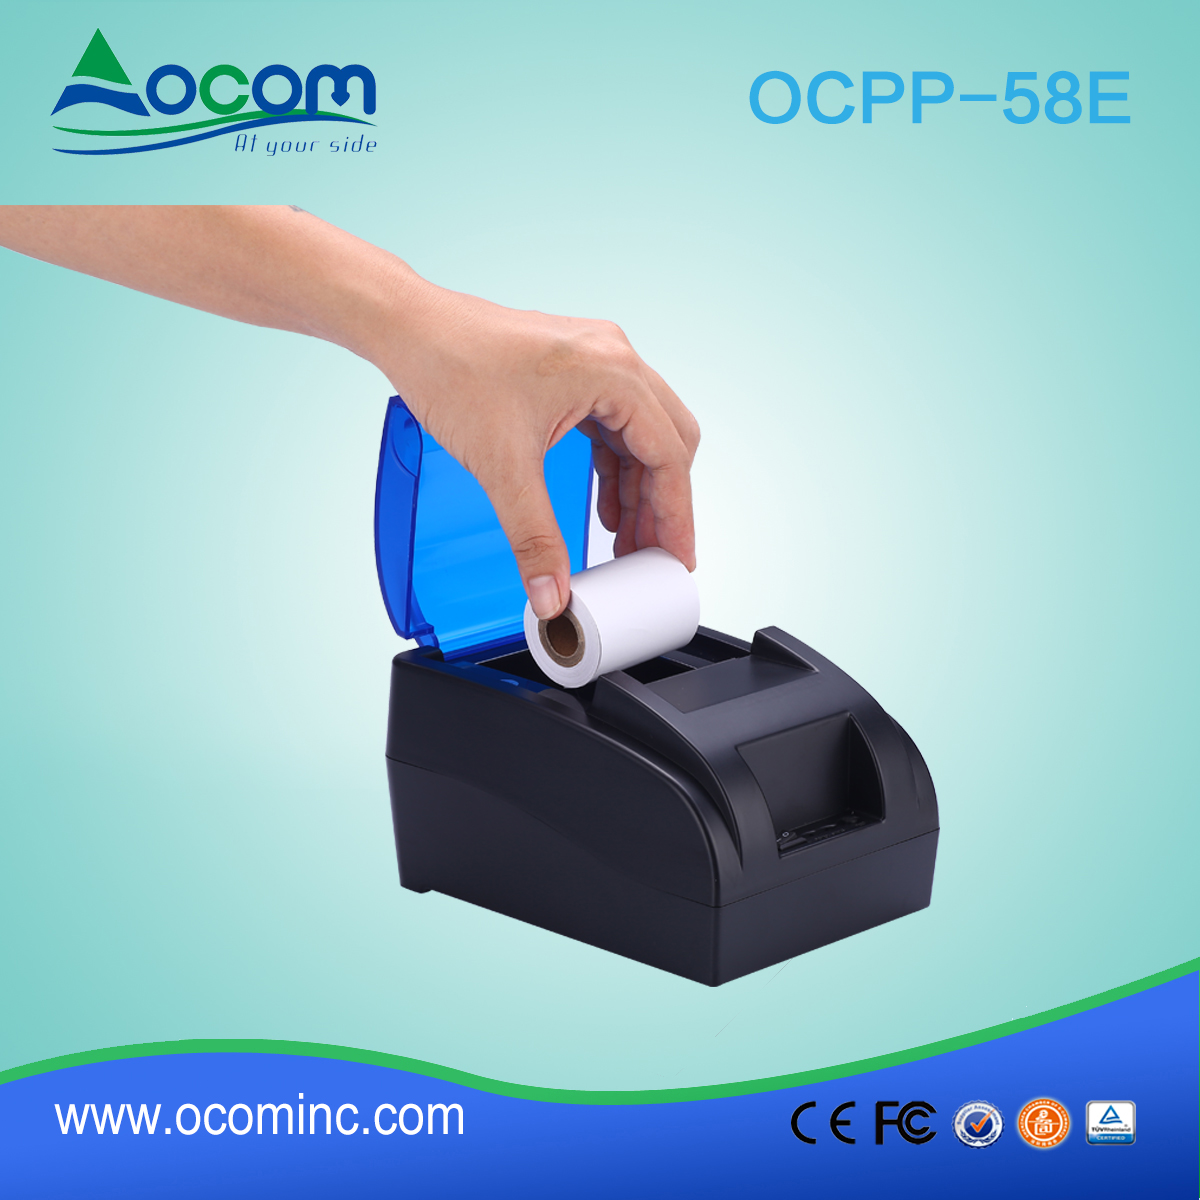 OCPP -58E Impresora térmica de recibos bluetooth android con impresión de códigos de barras barata de 2 pulgadas